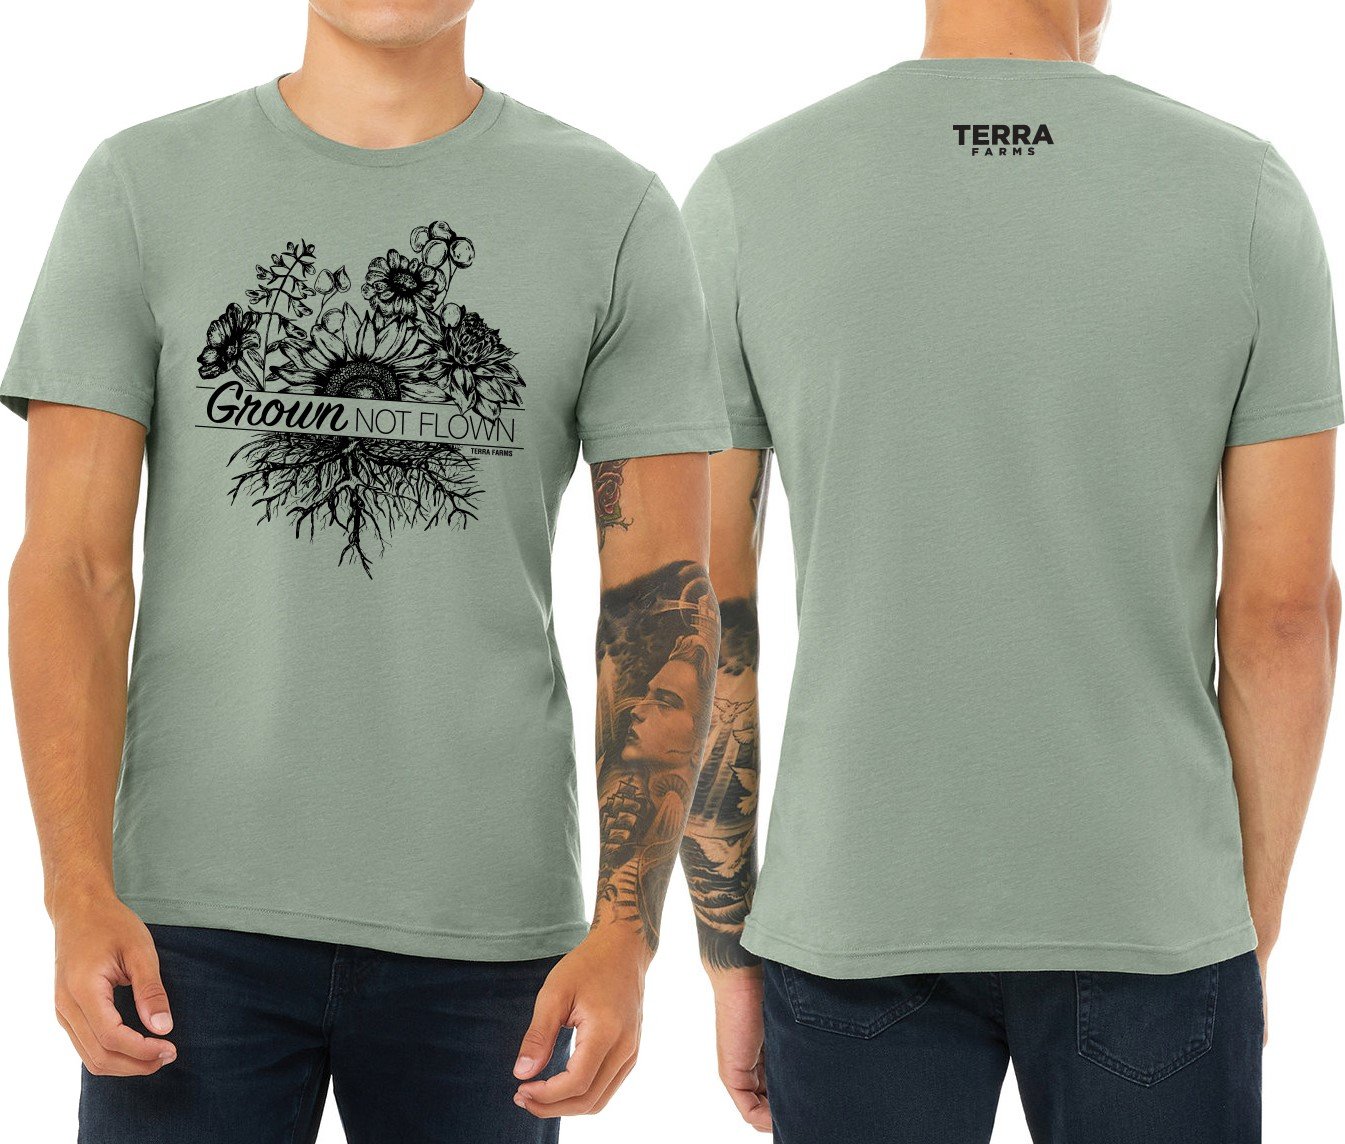 Grown Not Flown T-Shirt - Sage Green — Terra Farms